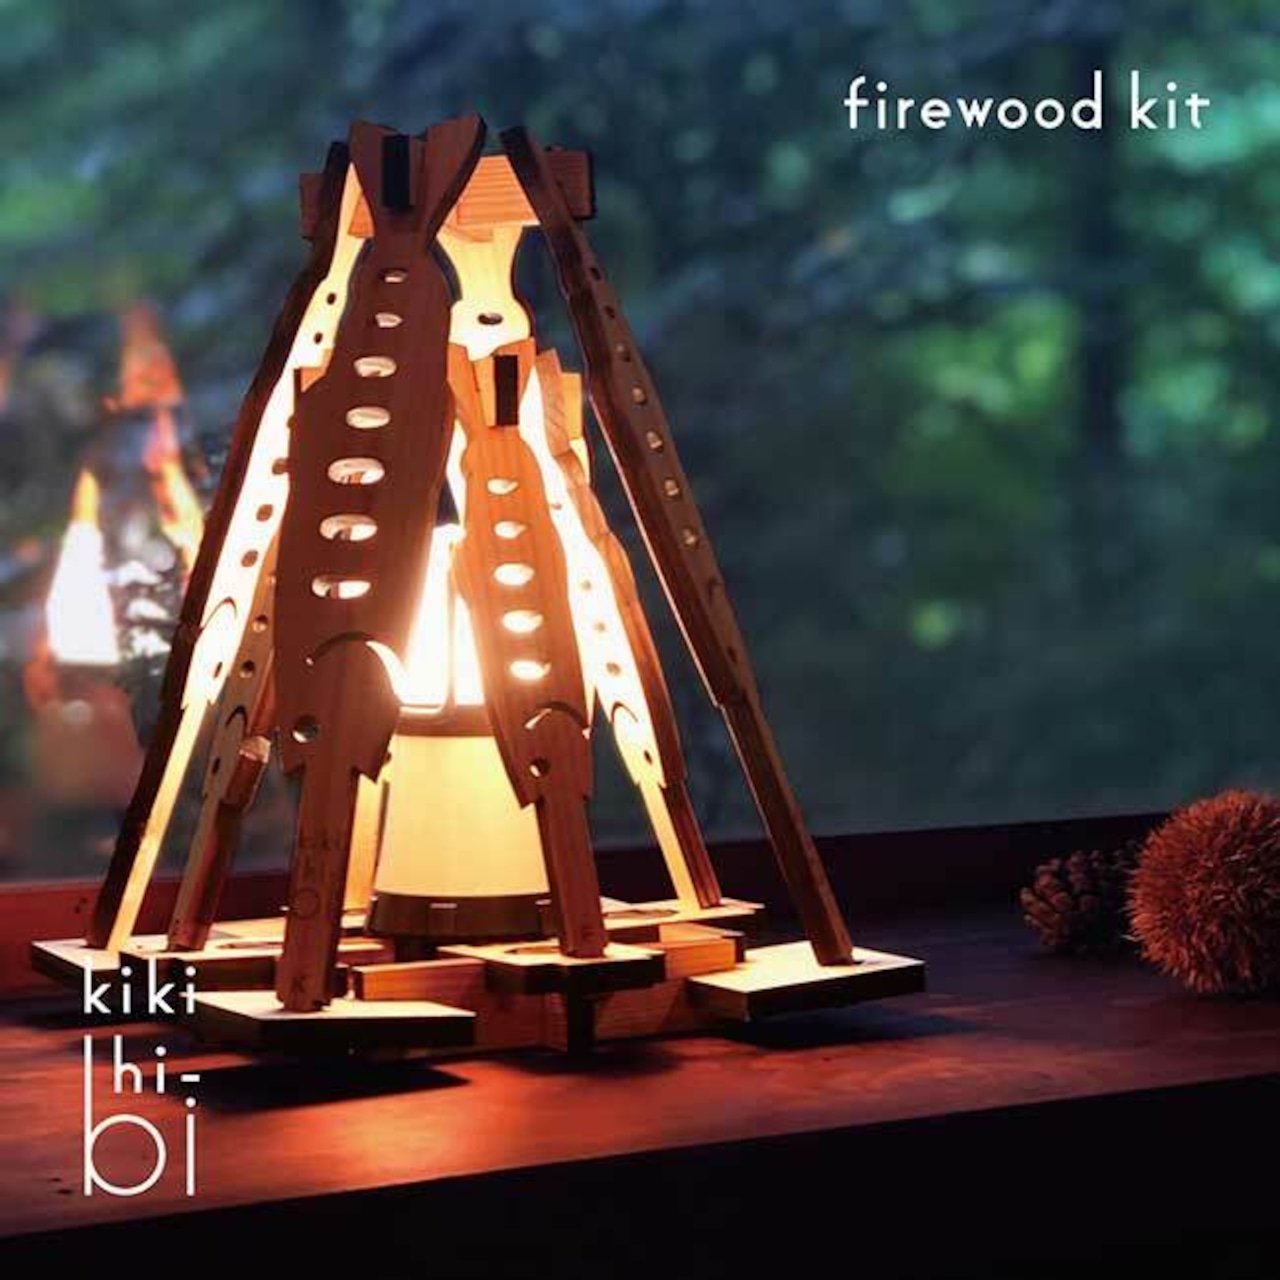 【ギフト袋に入れてお届け！】kikihi-bi kikihibi キキヒビ firewood kit ファイヤーウッドキット